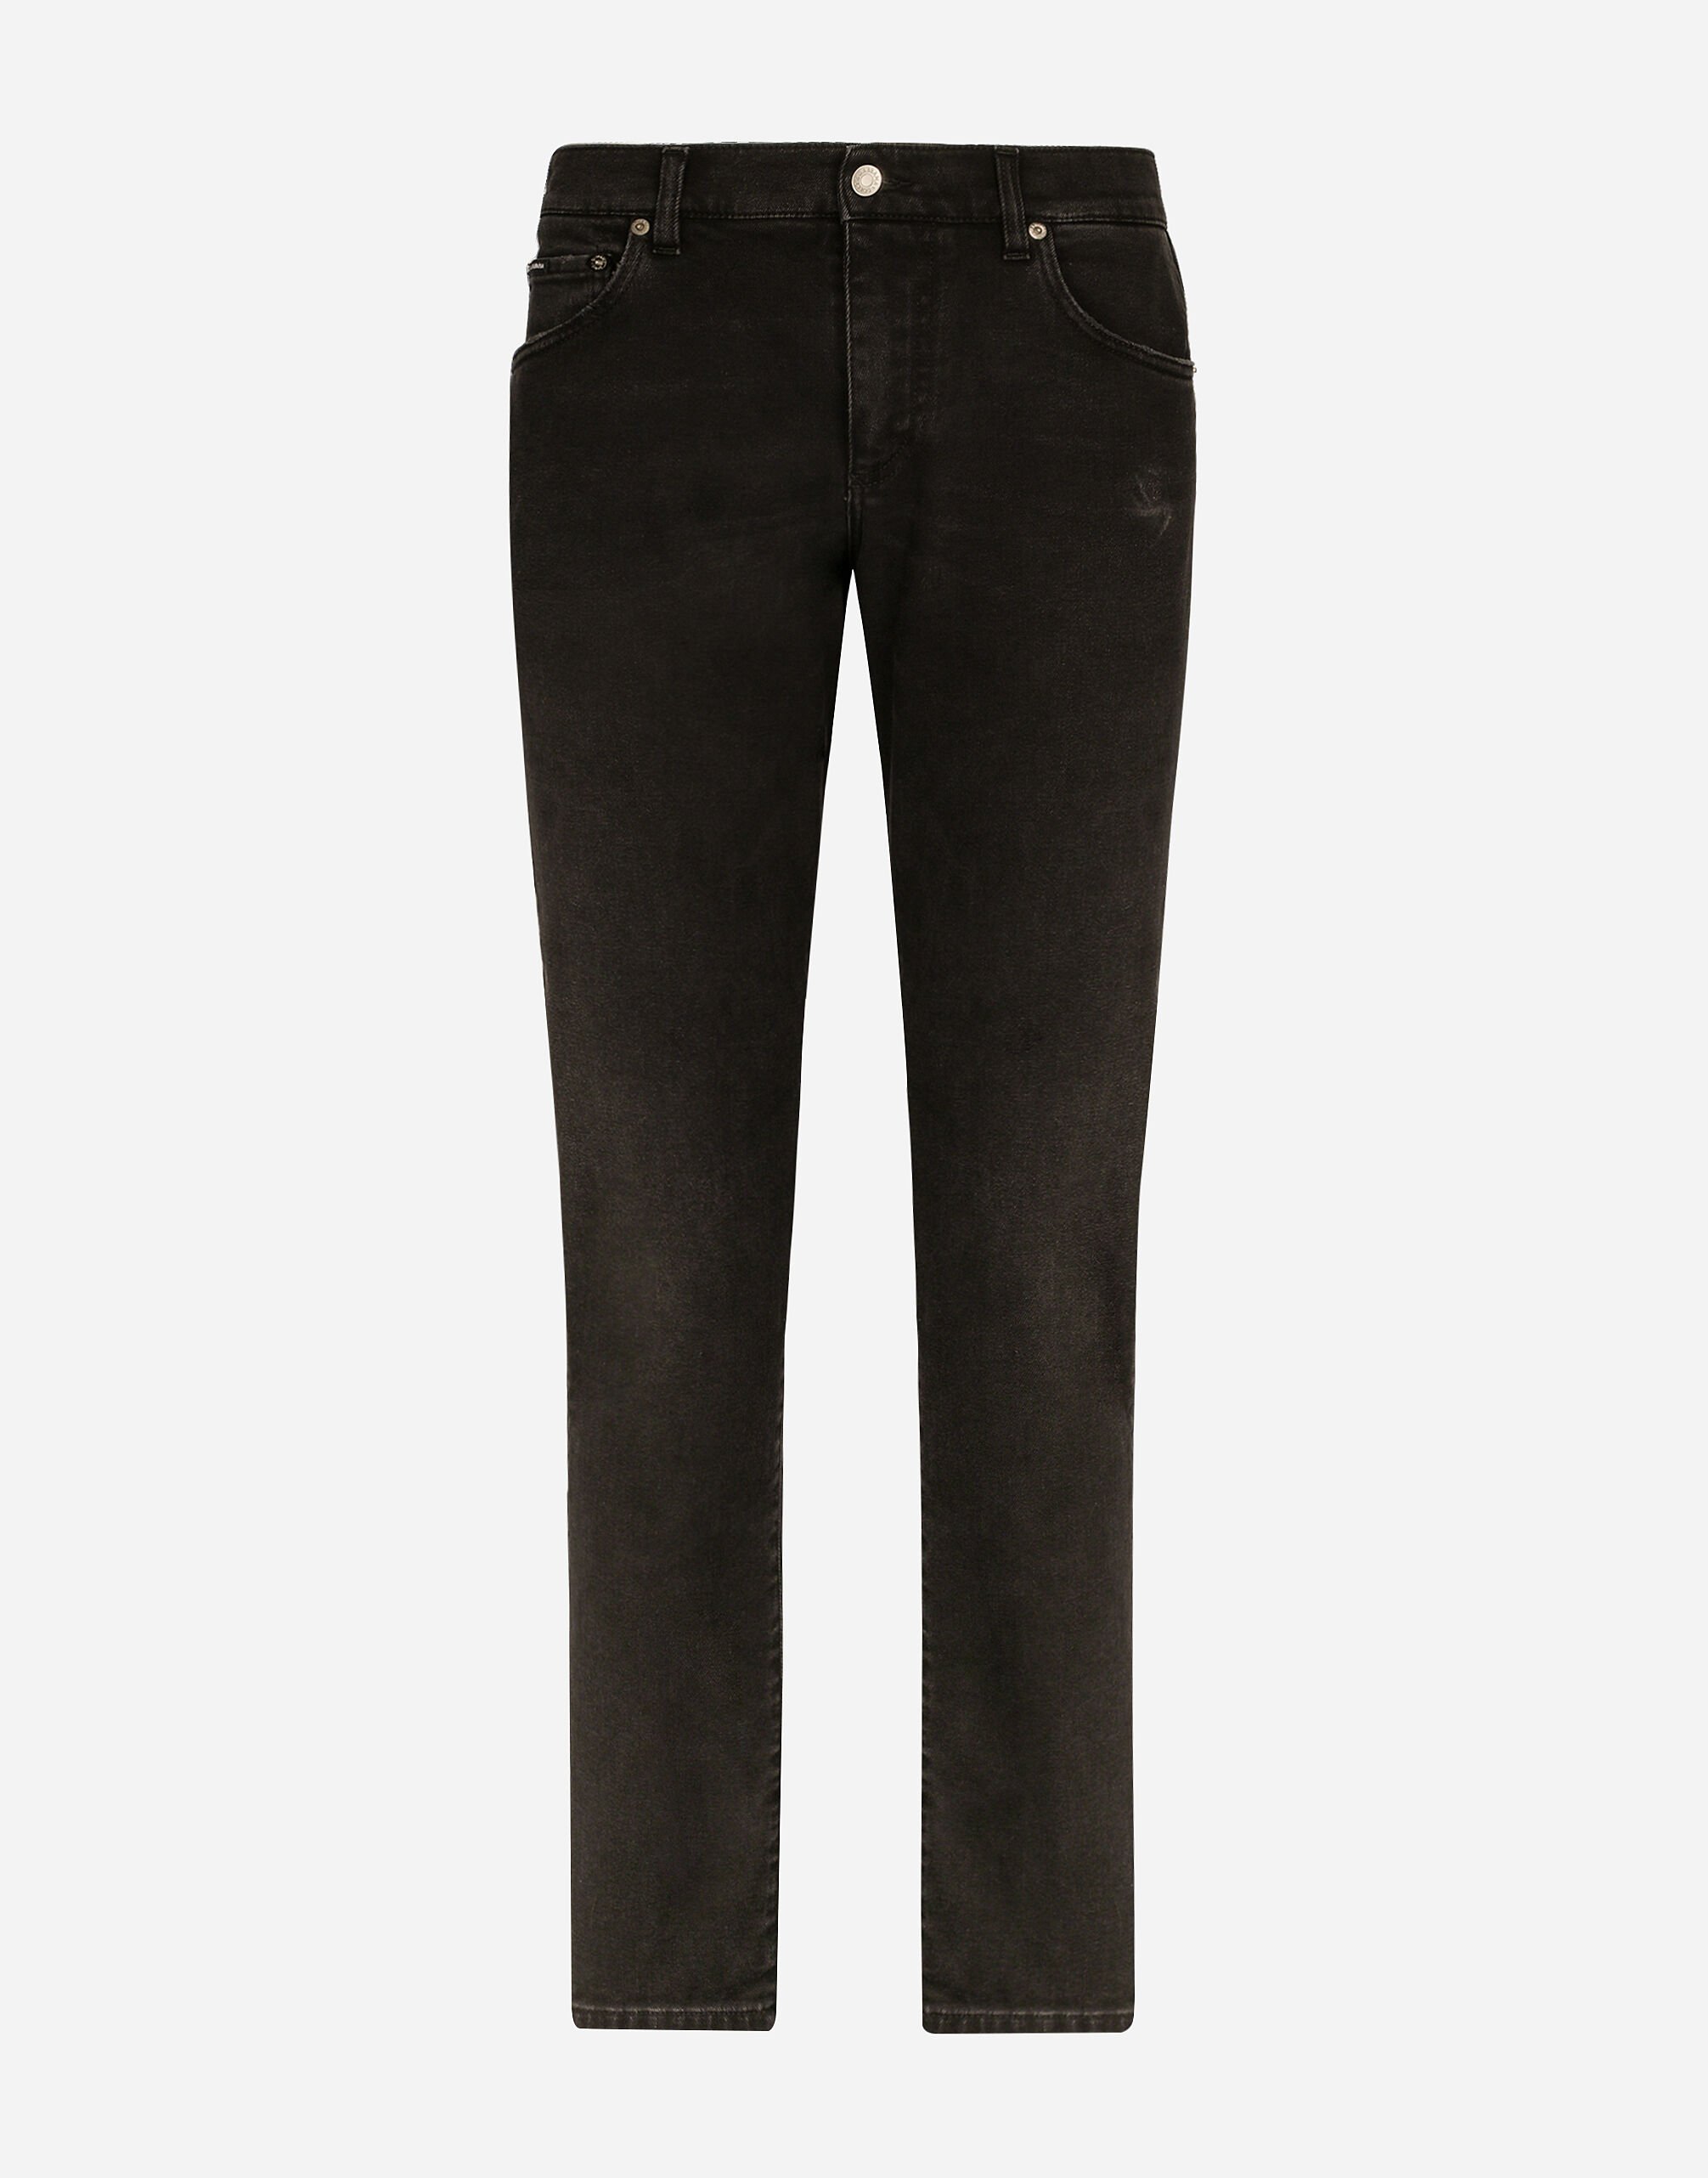 Dolce & Gabbana Slim fit stretch denim jeans with subtle abrasions Multicolor G9NL5DG8GW9